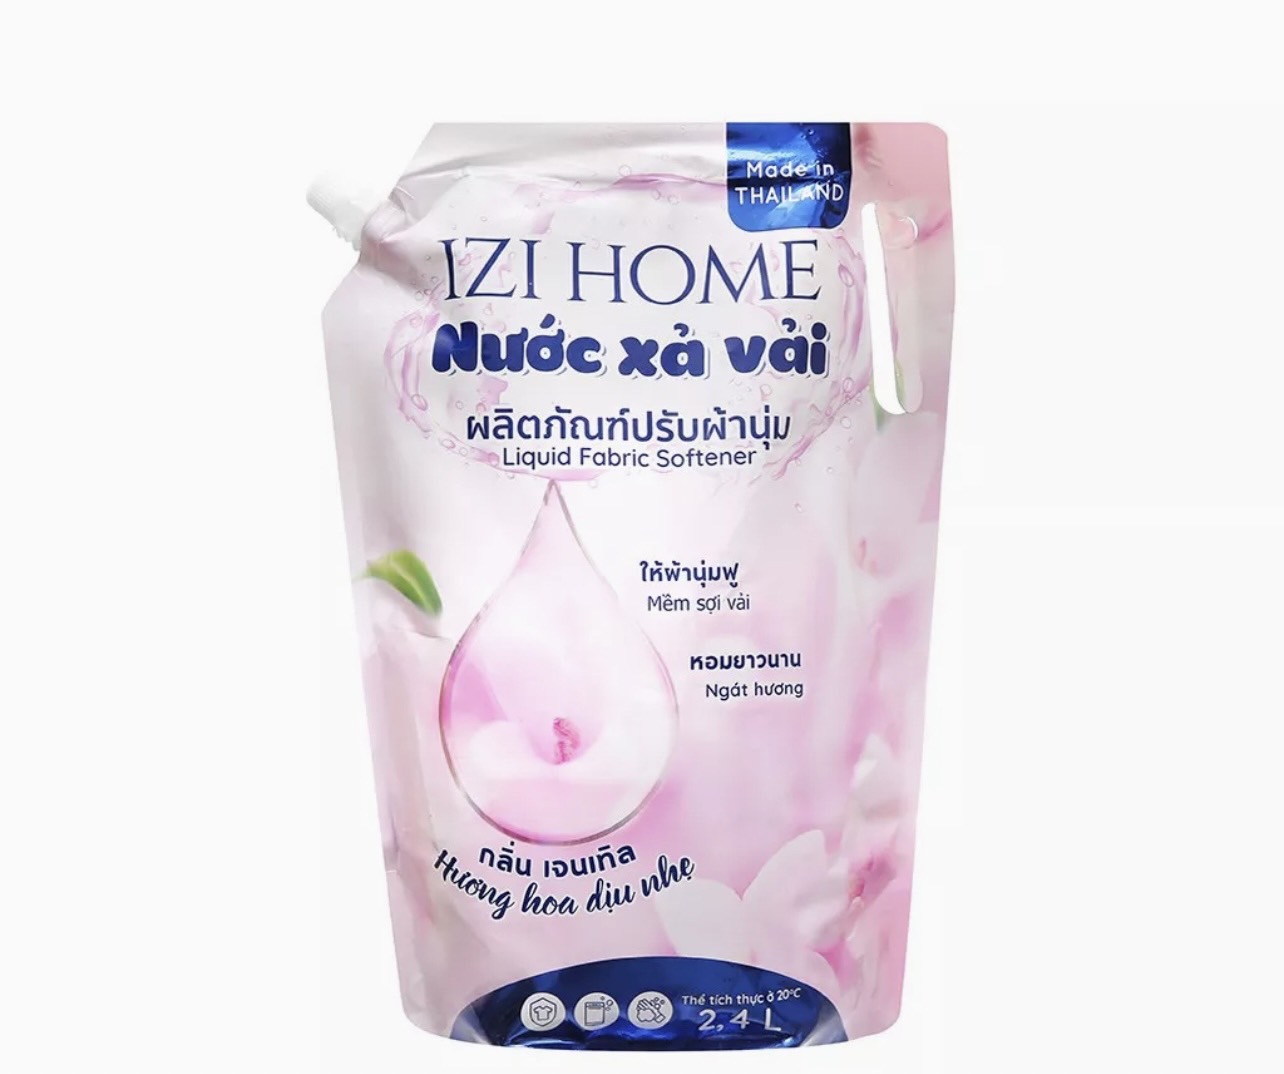 Nước xả vải IZI HOME hương hoa dịu nhẹ túi 2.4 lít